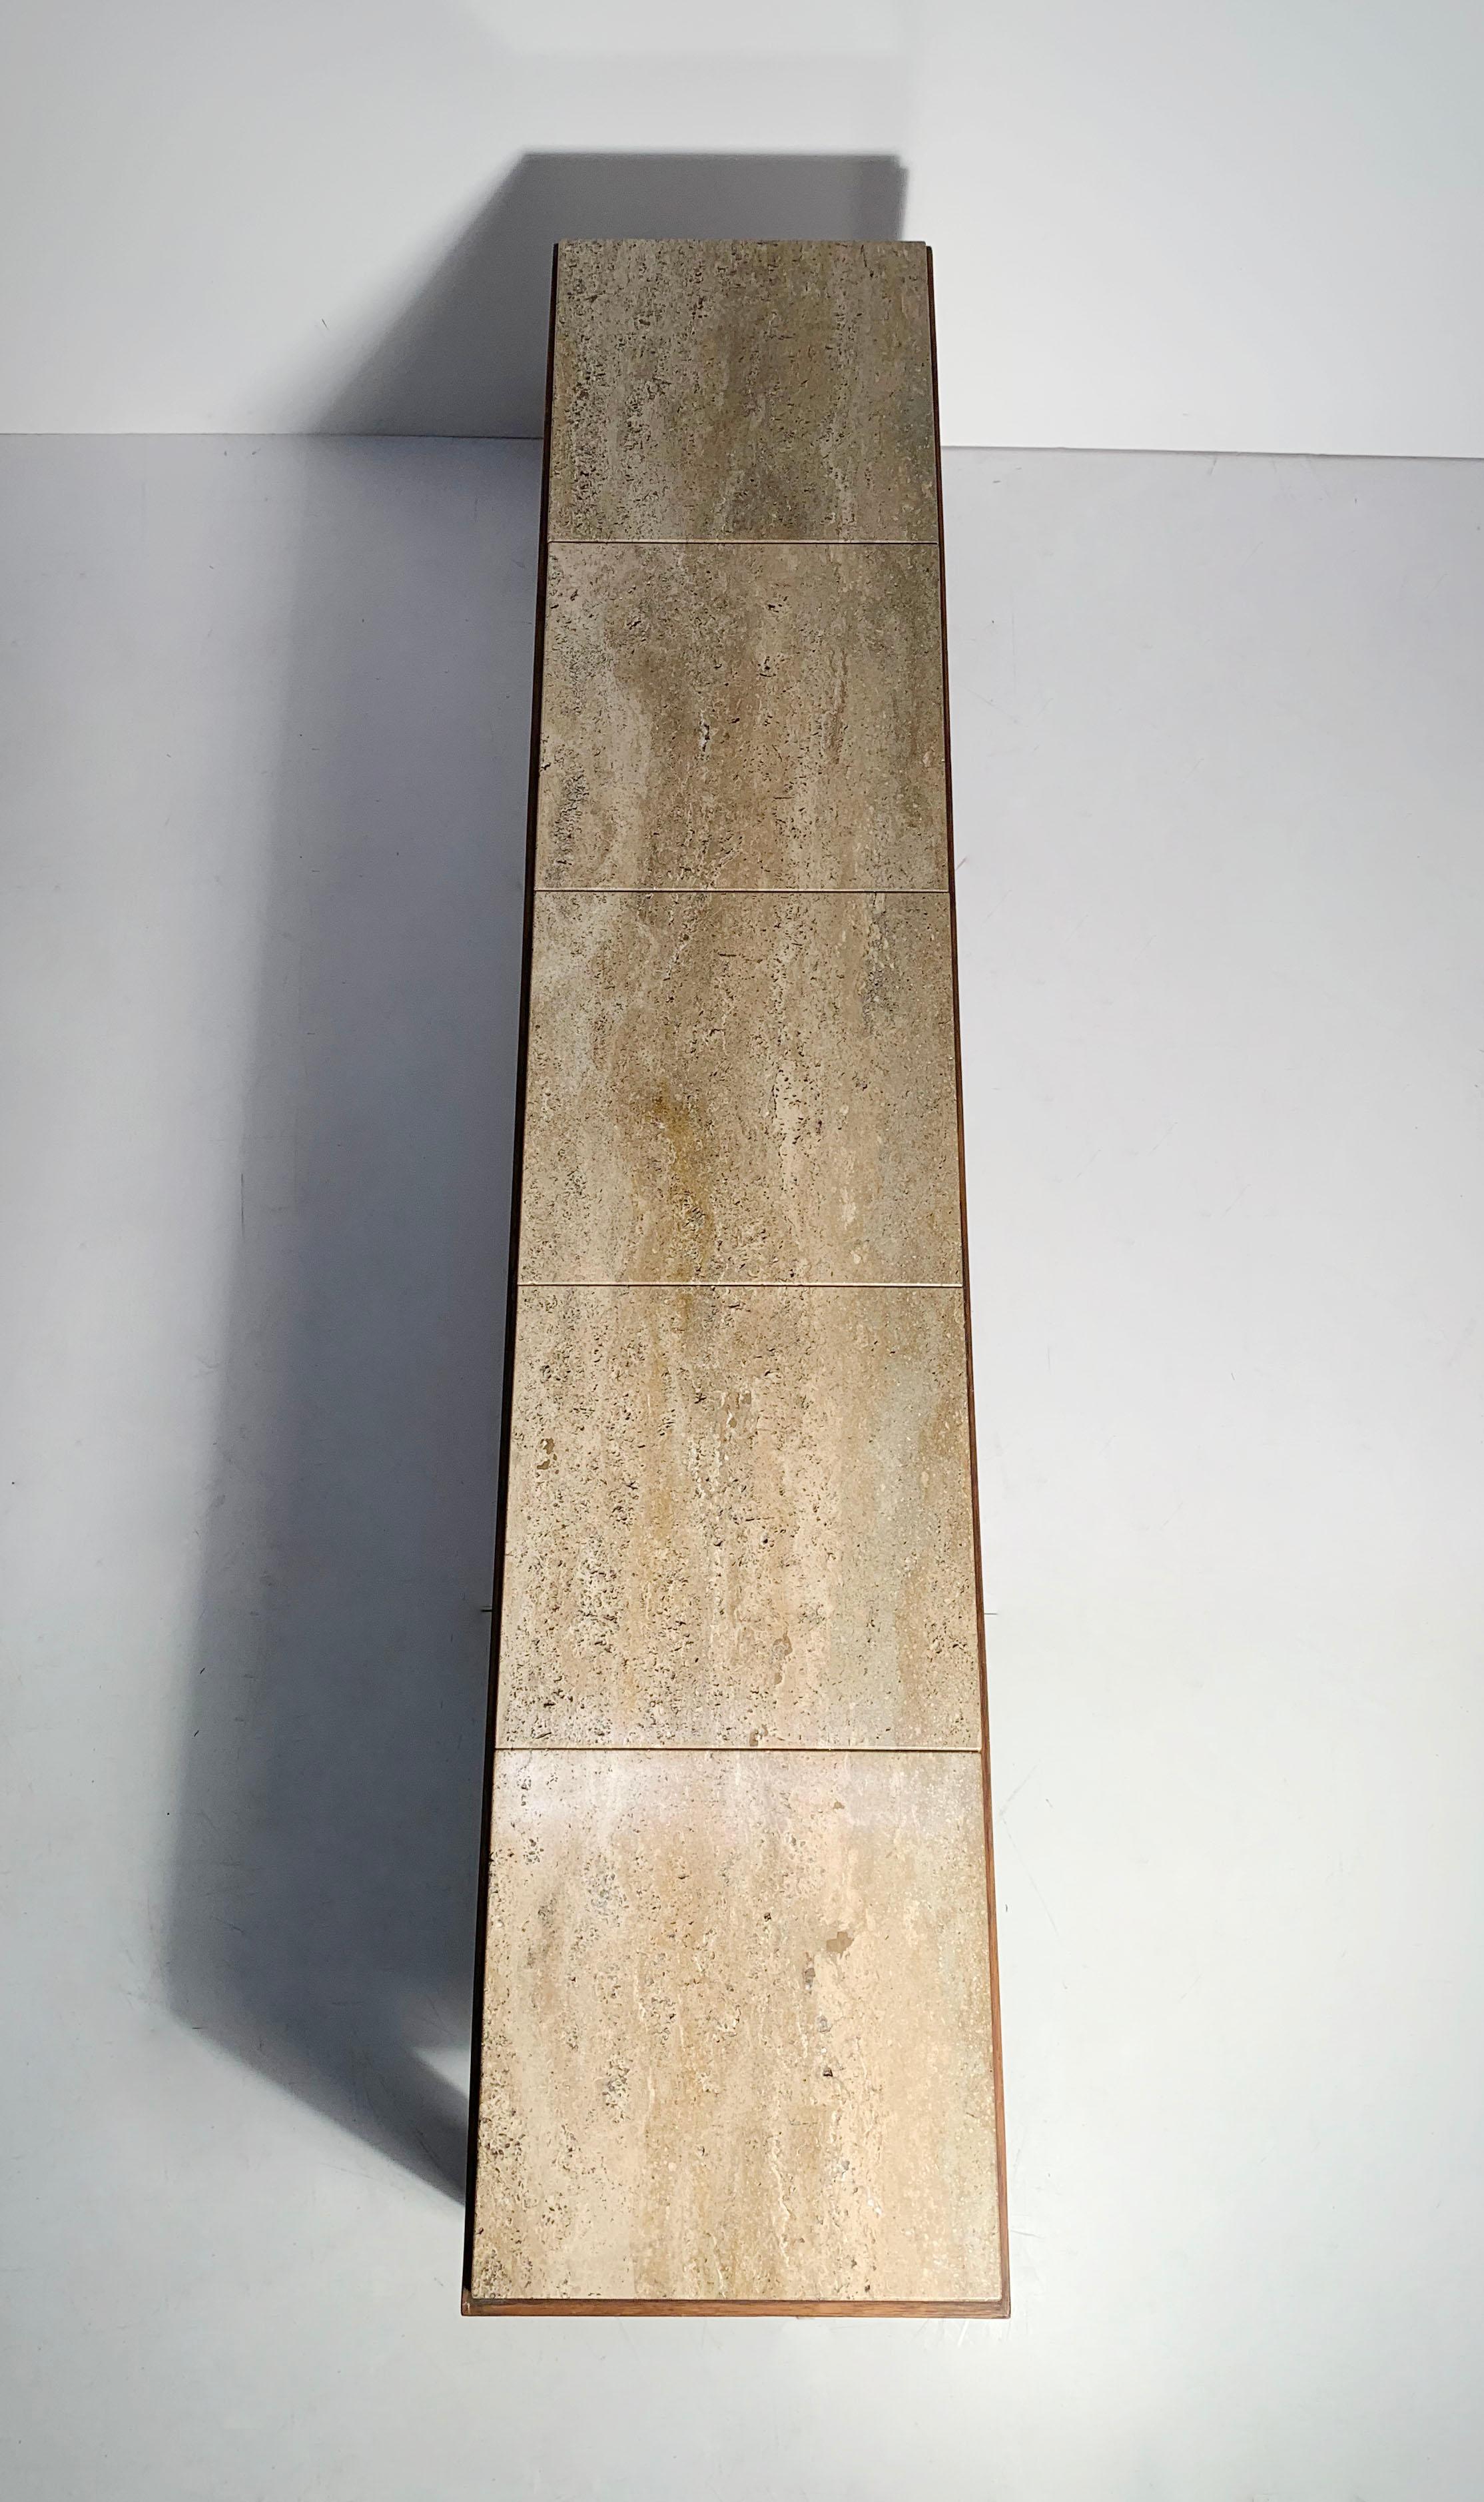 Une élégante console basse / table basse d'appoint Wormley faite sur mesure avec des insertions de carreaux de marbre travertin 9 x 9 pour former une longue forme rectangulaire en marbre.